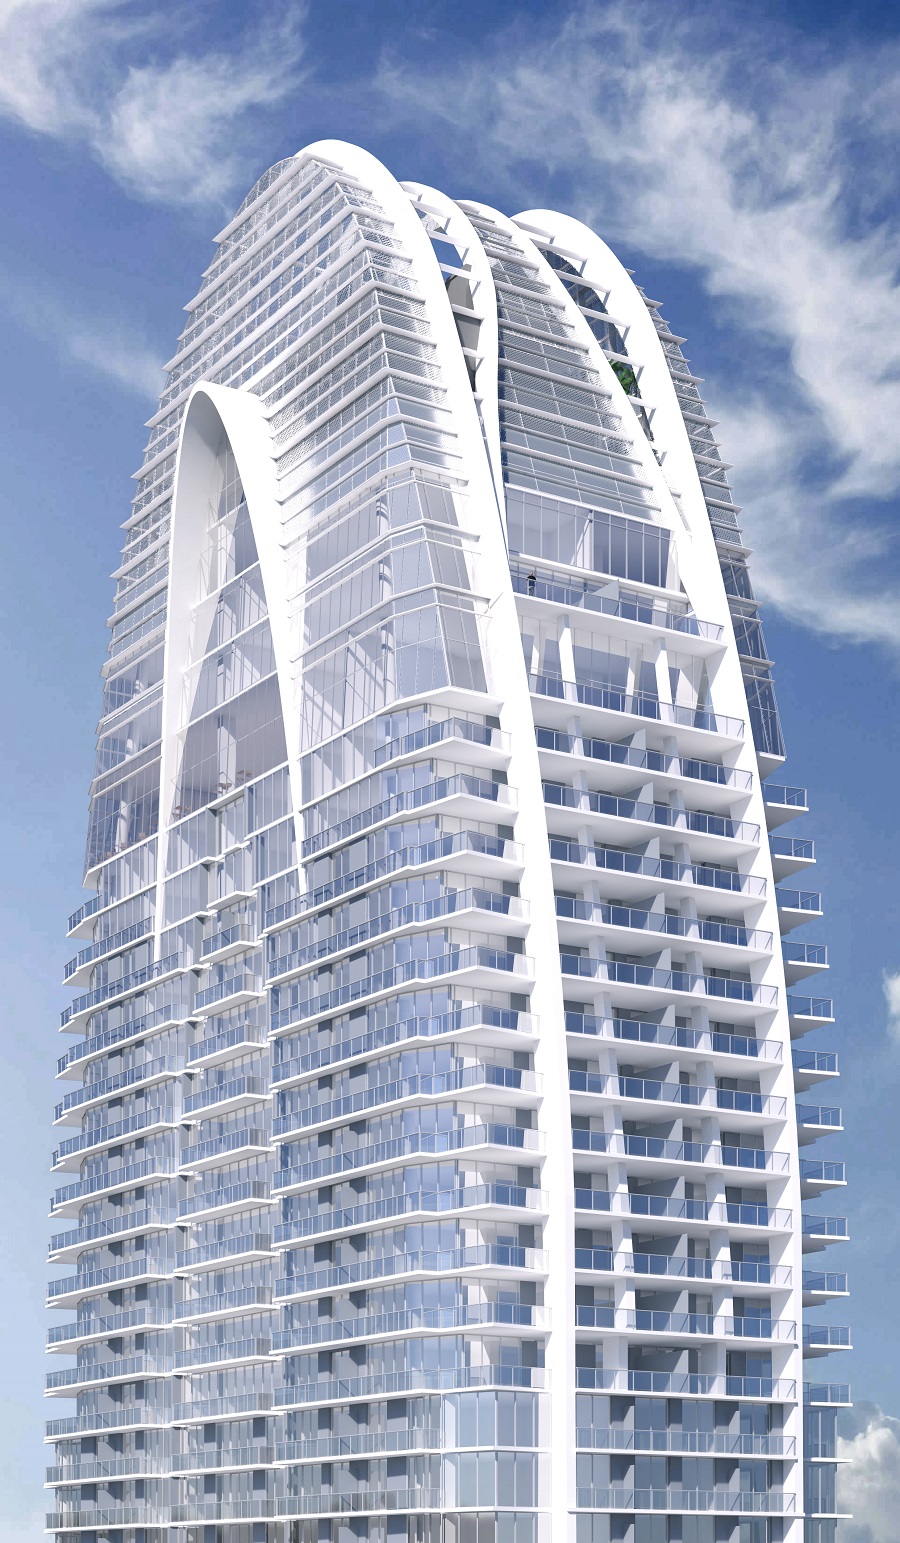 Condo Hotel Property Alert, Okan Tower Miami, New Hilton Condo Hotel